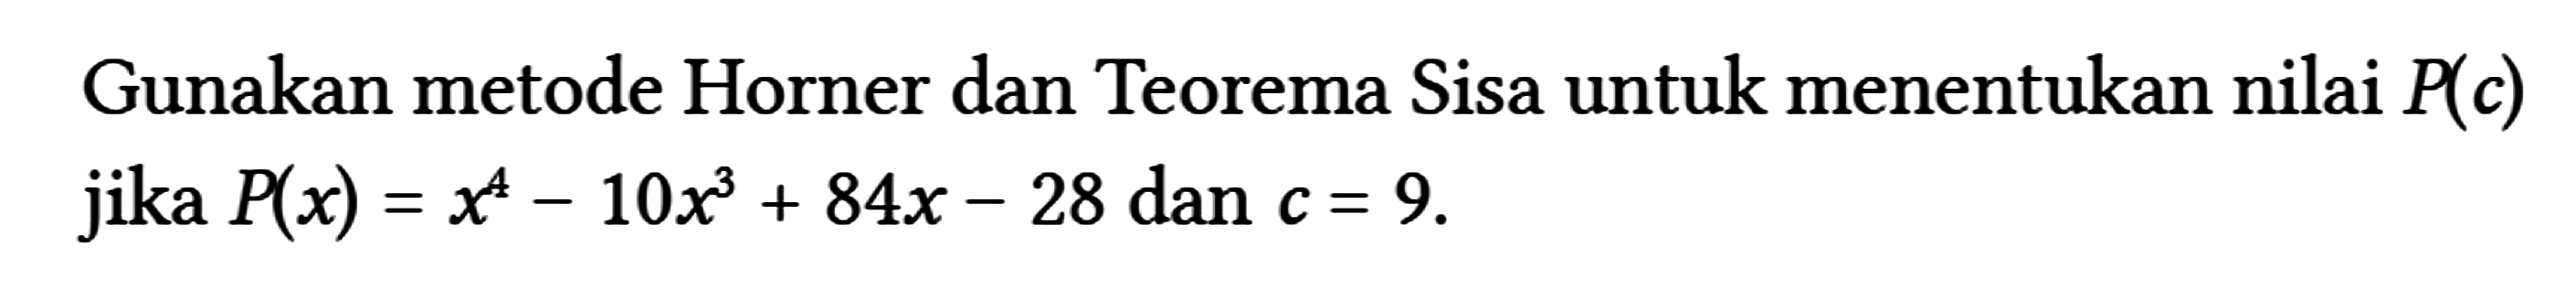 Gunakan metode Horner dan Teorema Sisa untuk menentukan nilai P(c) jika P(x)=x^(4)-10 x^(3)+84 x-28 dan c=9